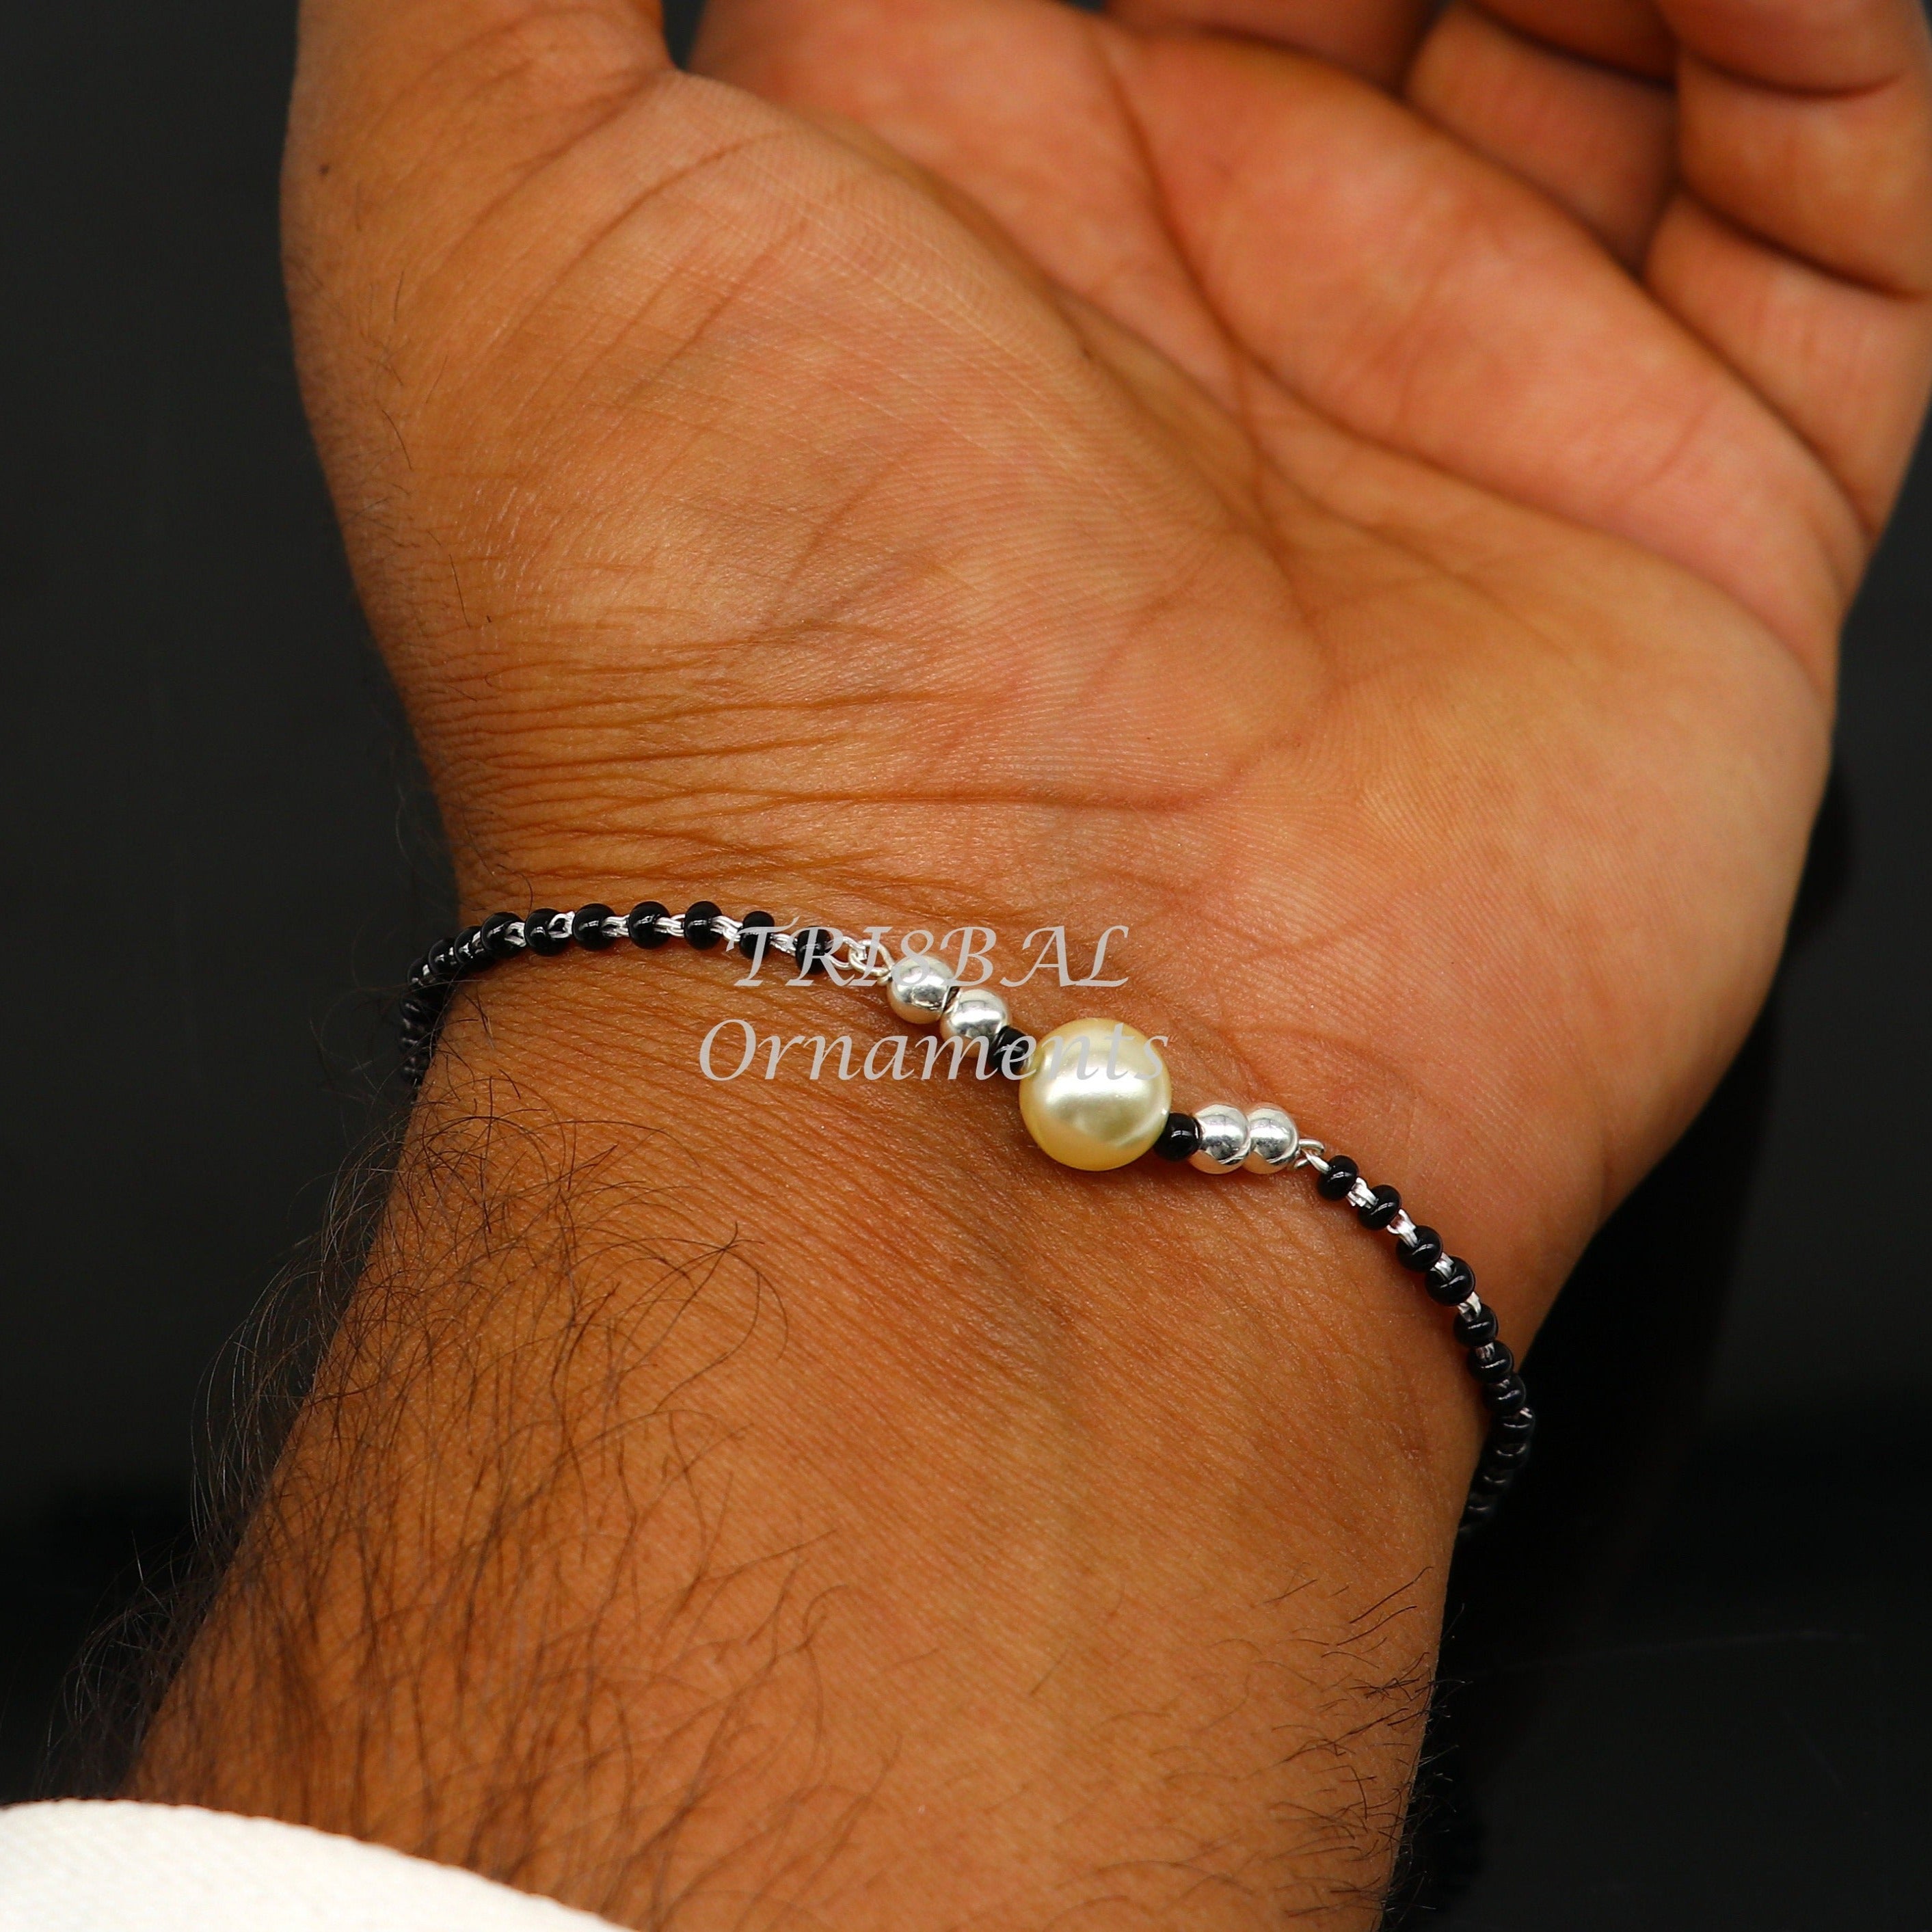 3mm Black Onyx Bead Bracelet with Diamond Bead - Zoe Lev Jewelry